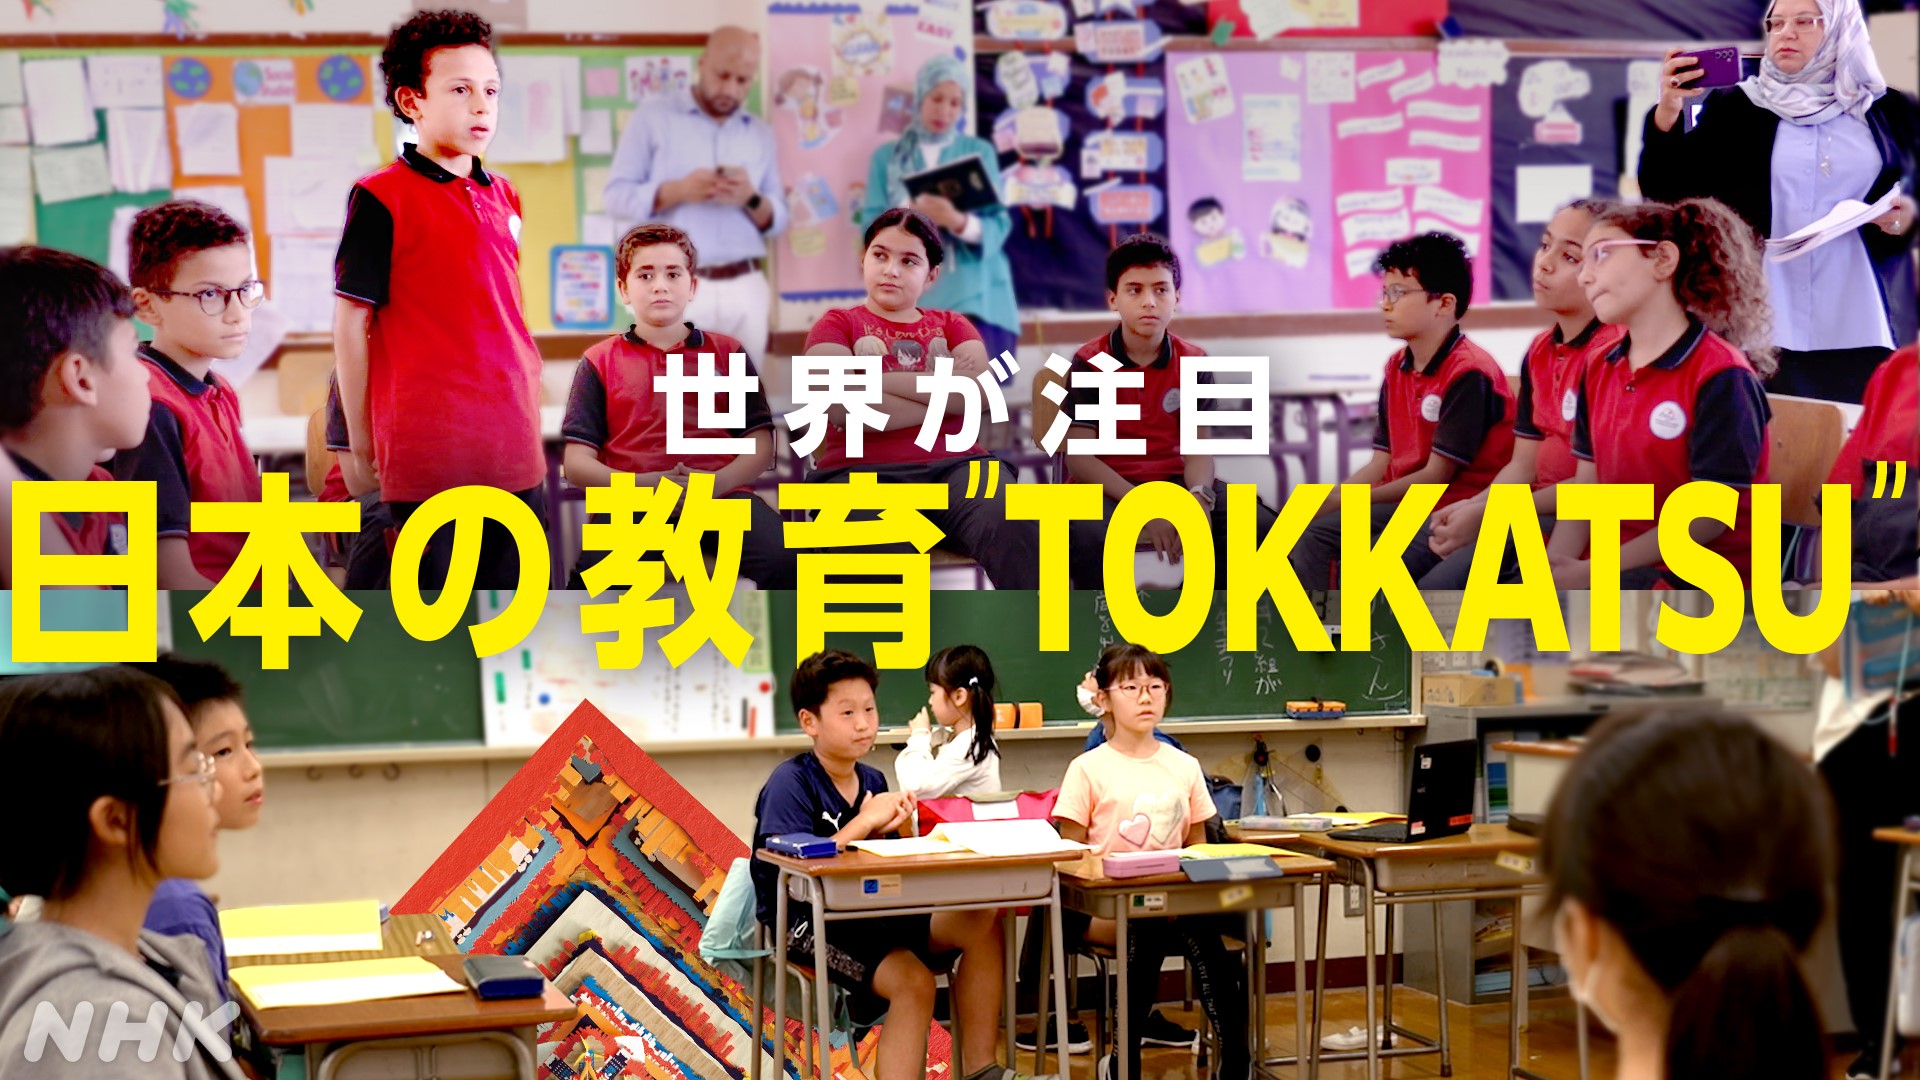 世界が注目!日本の教育「TOKKATSU」特別活動の意義は?